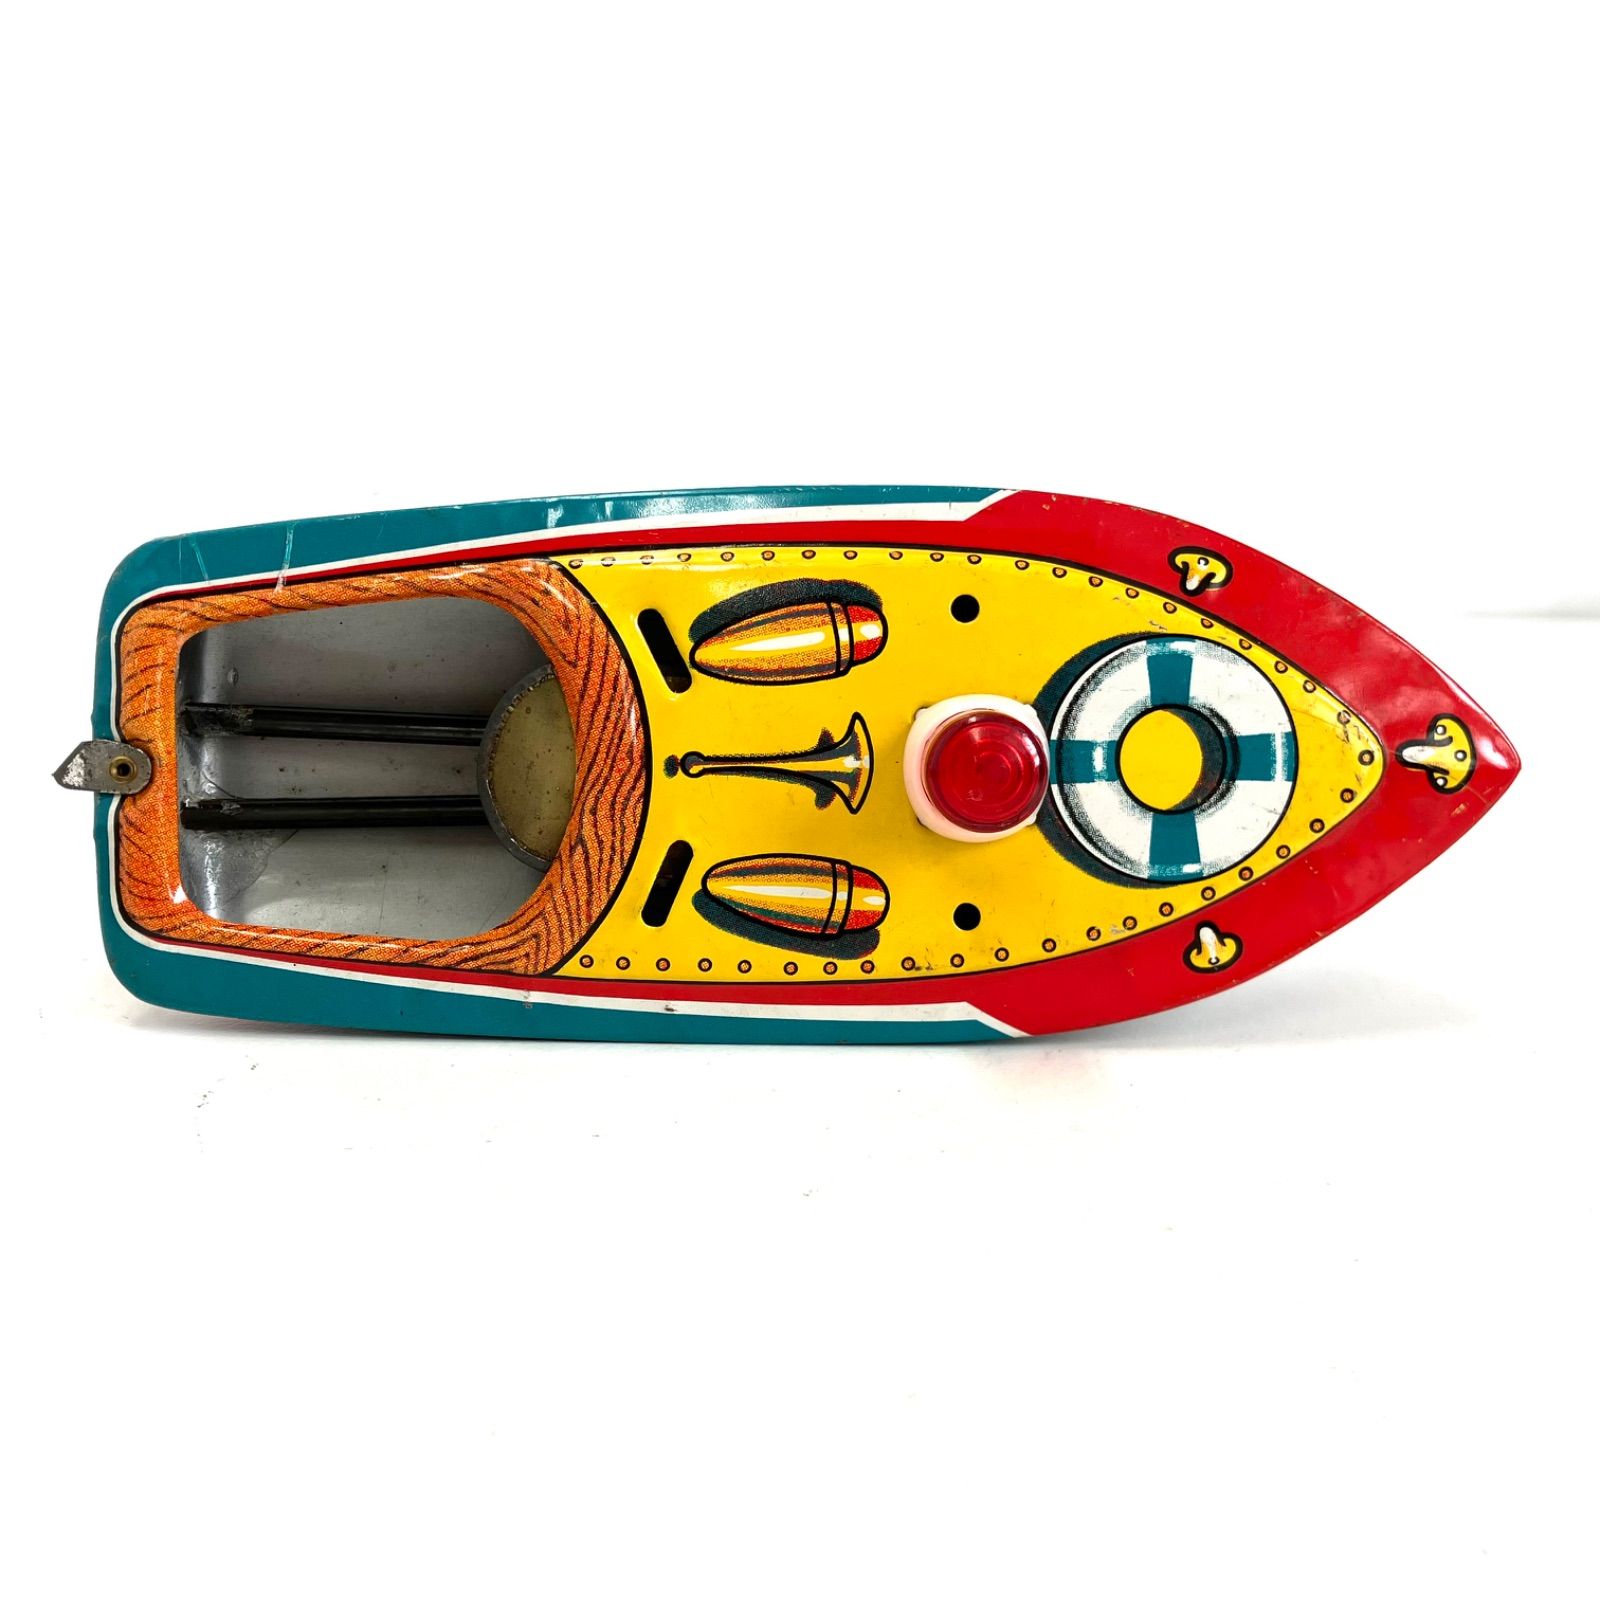 758113】 ポンポン丸 ブリキ製 船 おもちゃ 美品 - メルカリ